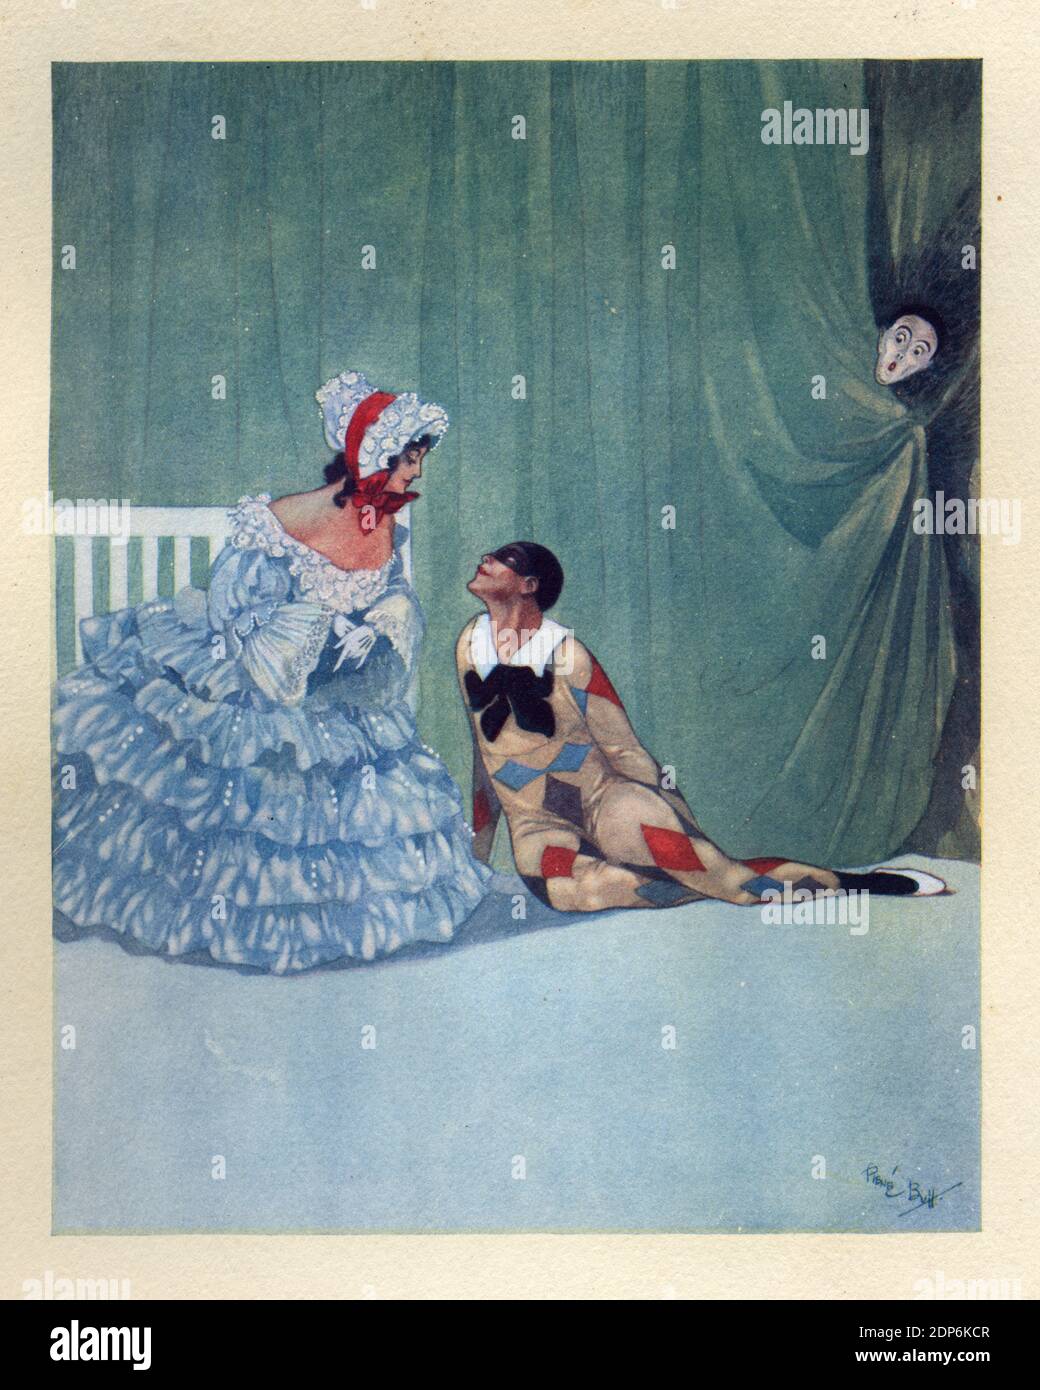 Harlequin e la signora del balletto russo Carnaval, un balletto basato sulla musica della suite di piano Carnaval di Robert Schumann, Op. 9. Rene Bull Foto Stock